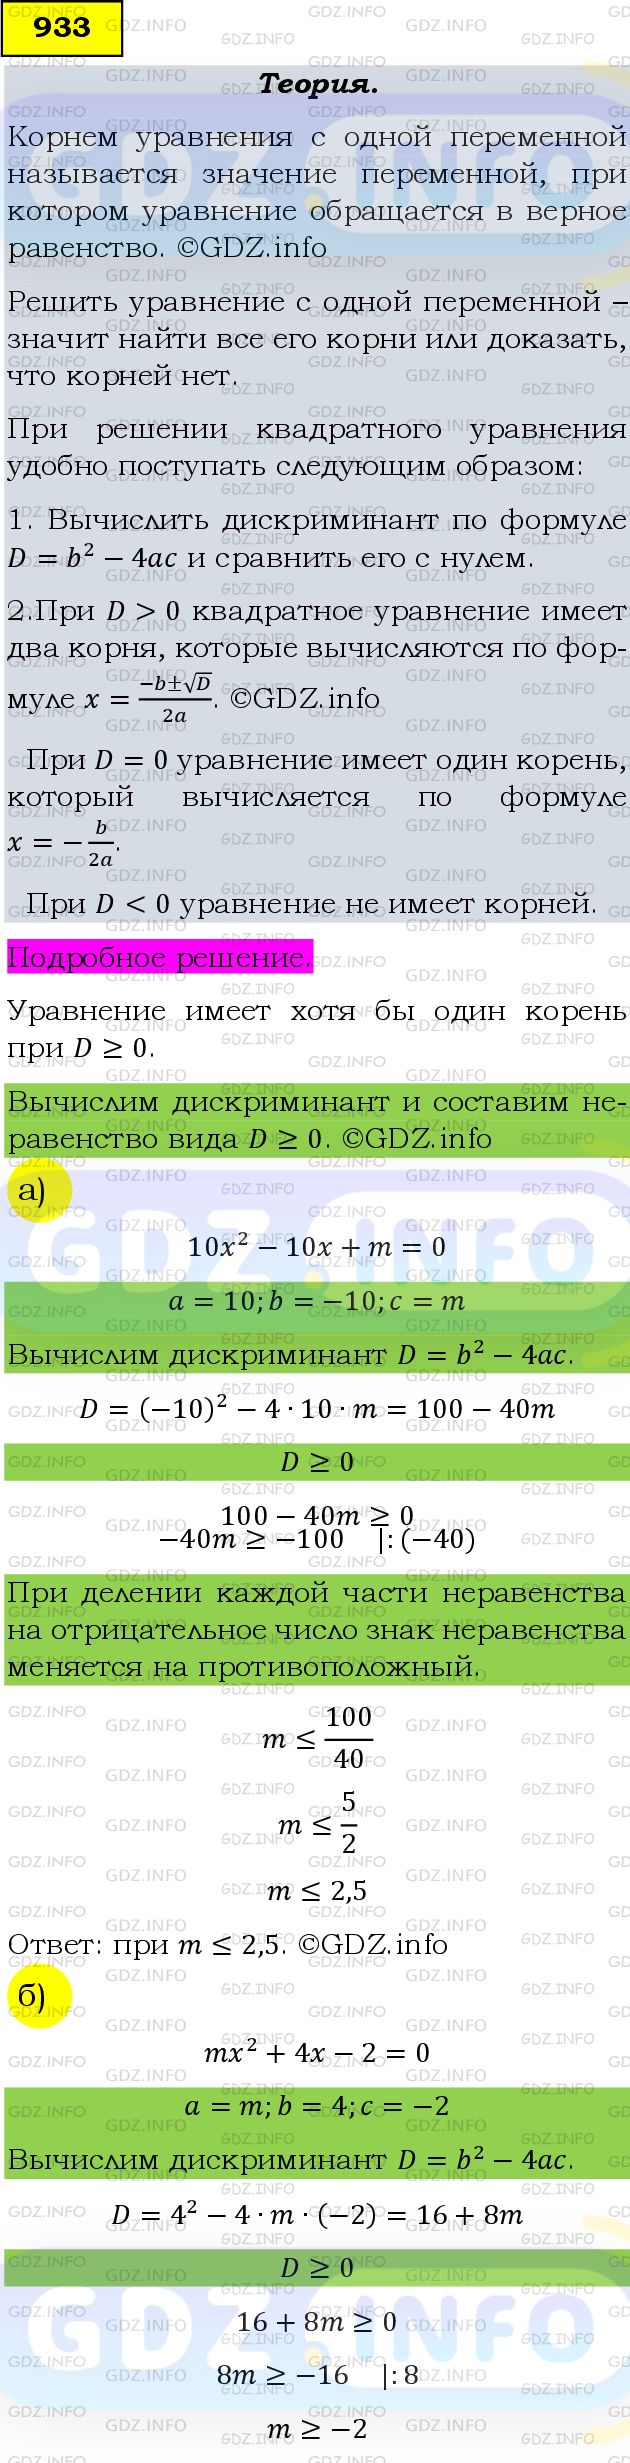 Фото подробного решения: Номер задания №933 из ГДЗ по Алгебре 9 класс: Макарычев Ю.Н.